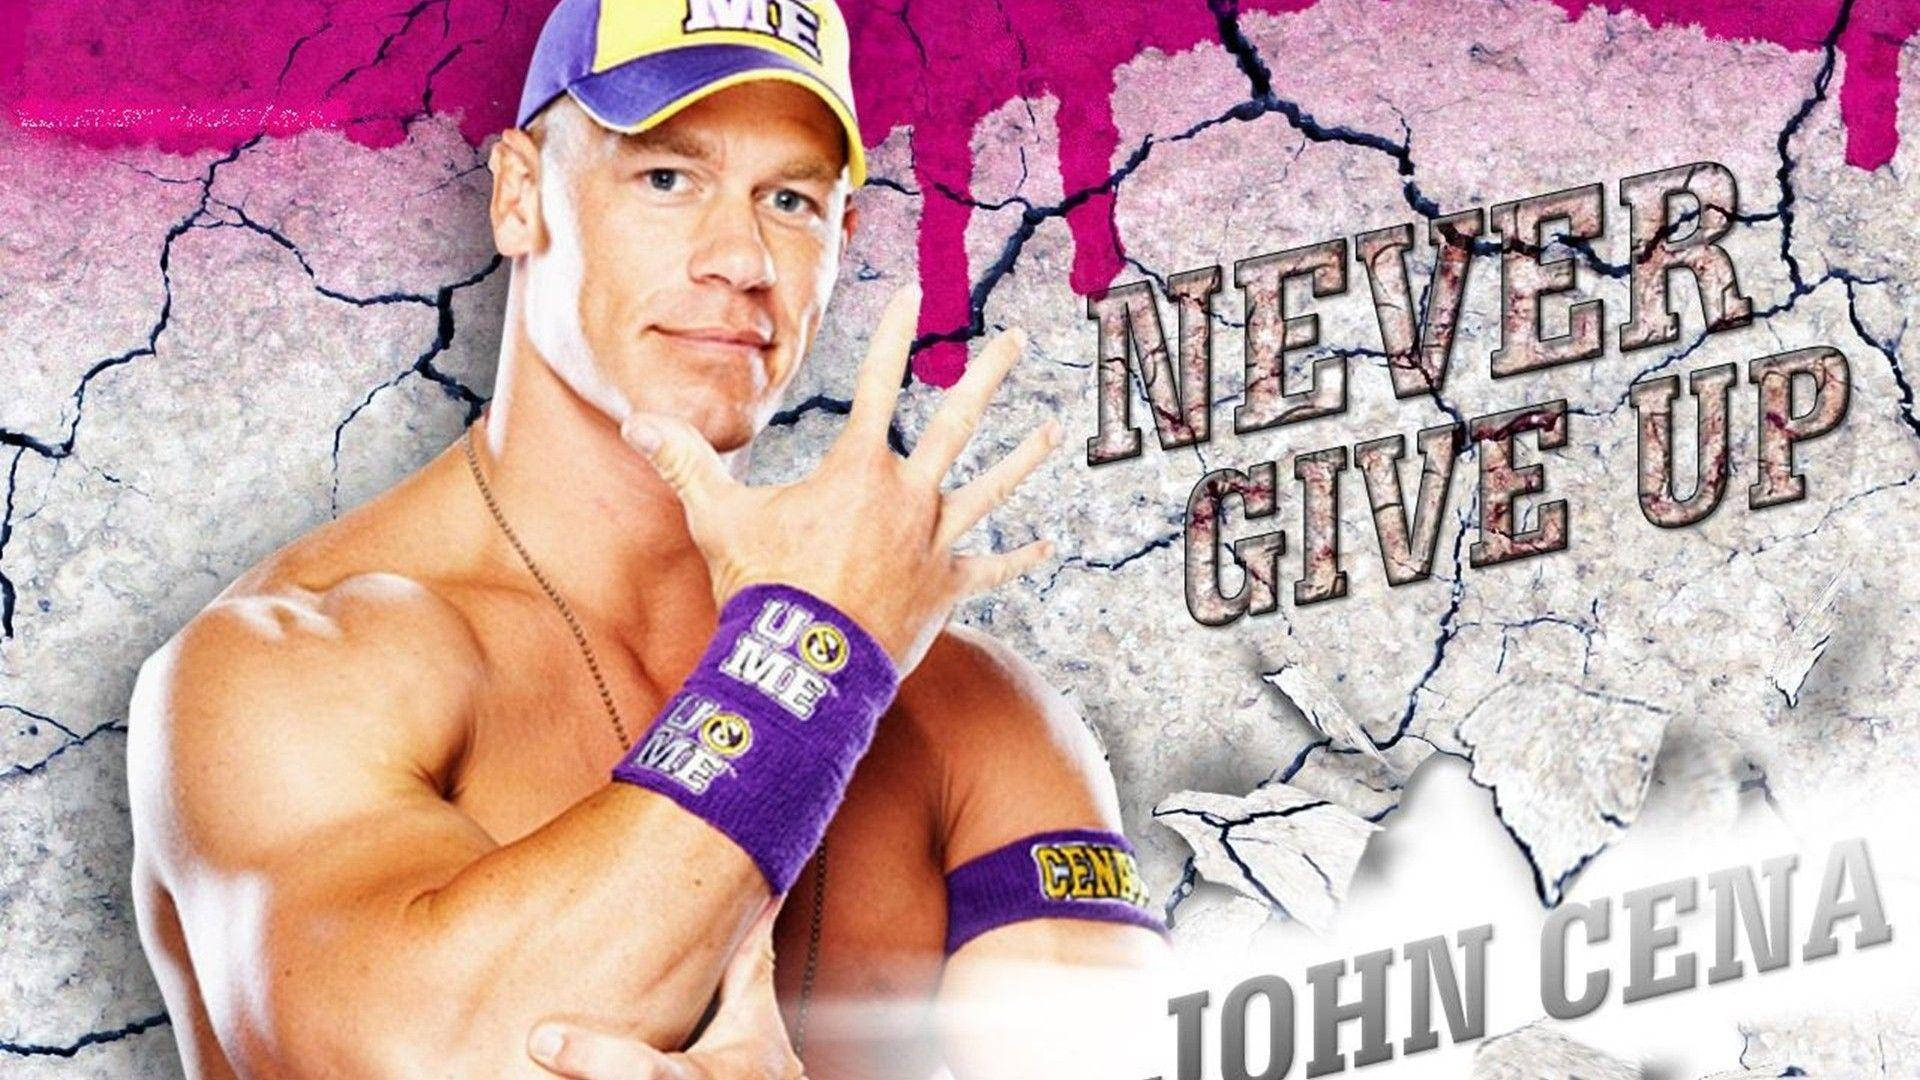 American Wrestler John Cena Digital Cover Wallpaper